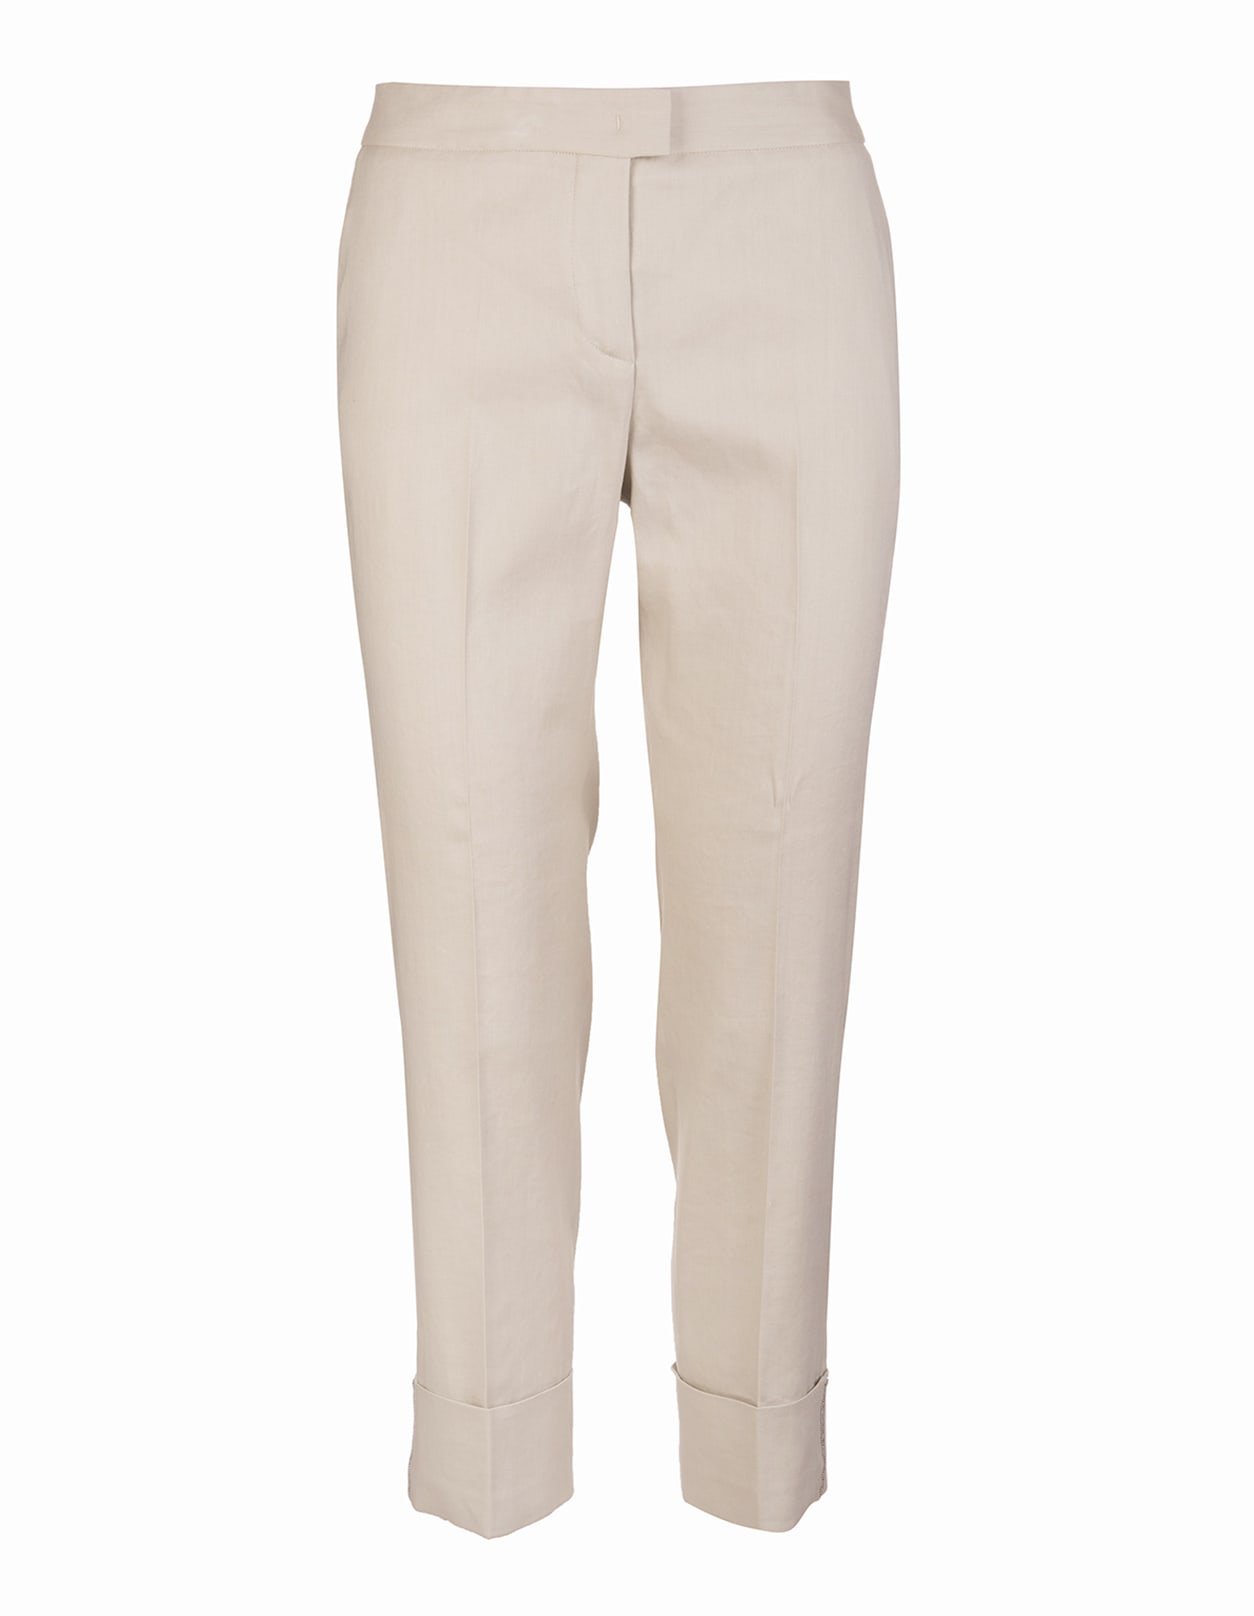 Fabiana Filippi Hay Color Deruta Trousers In Cotton And Linen